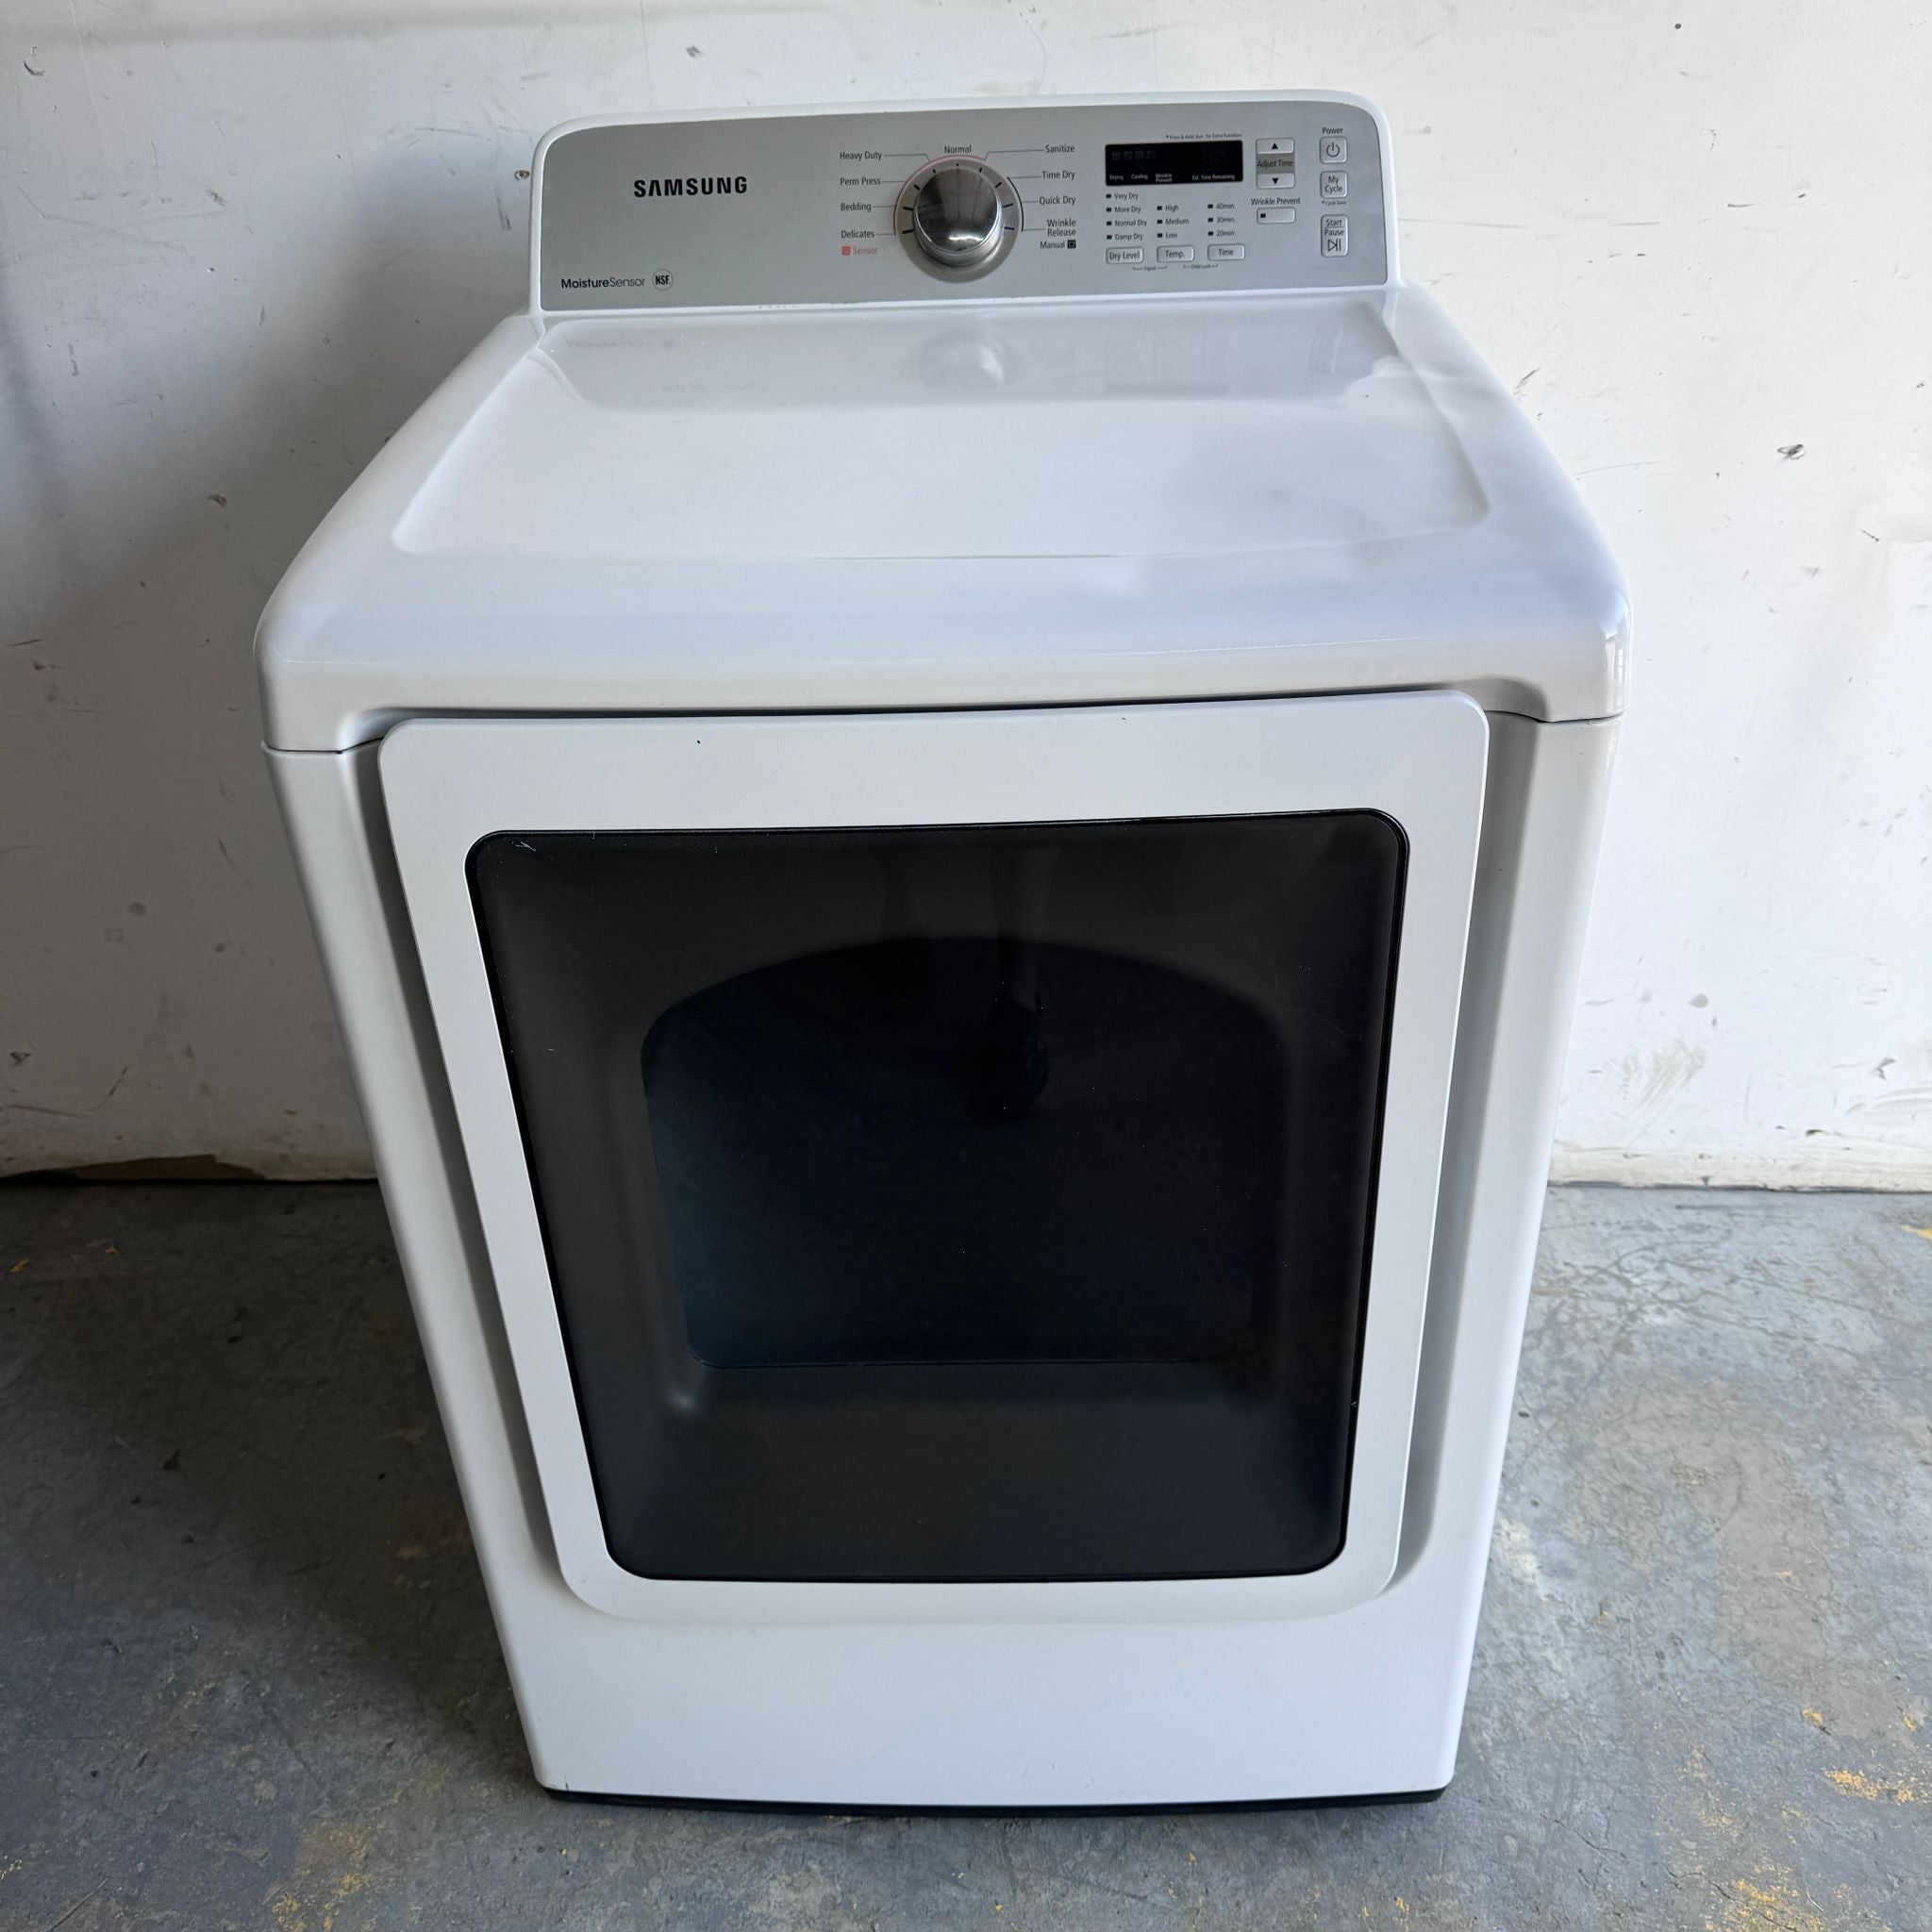 Samsung-Dryer